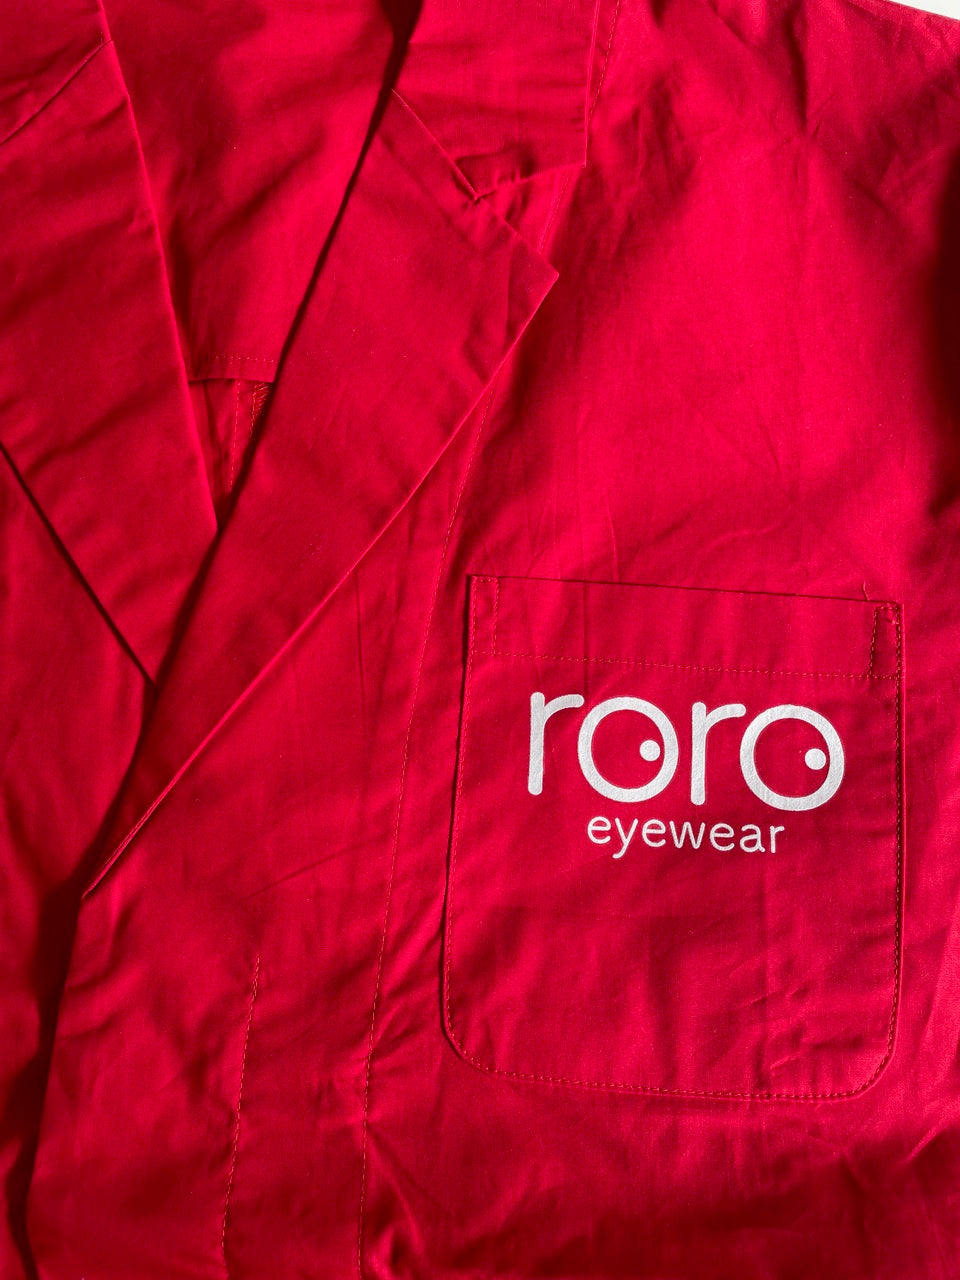 アカイ赤衣　roroeyewear  red coat